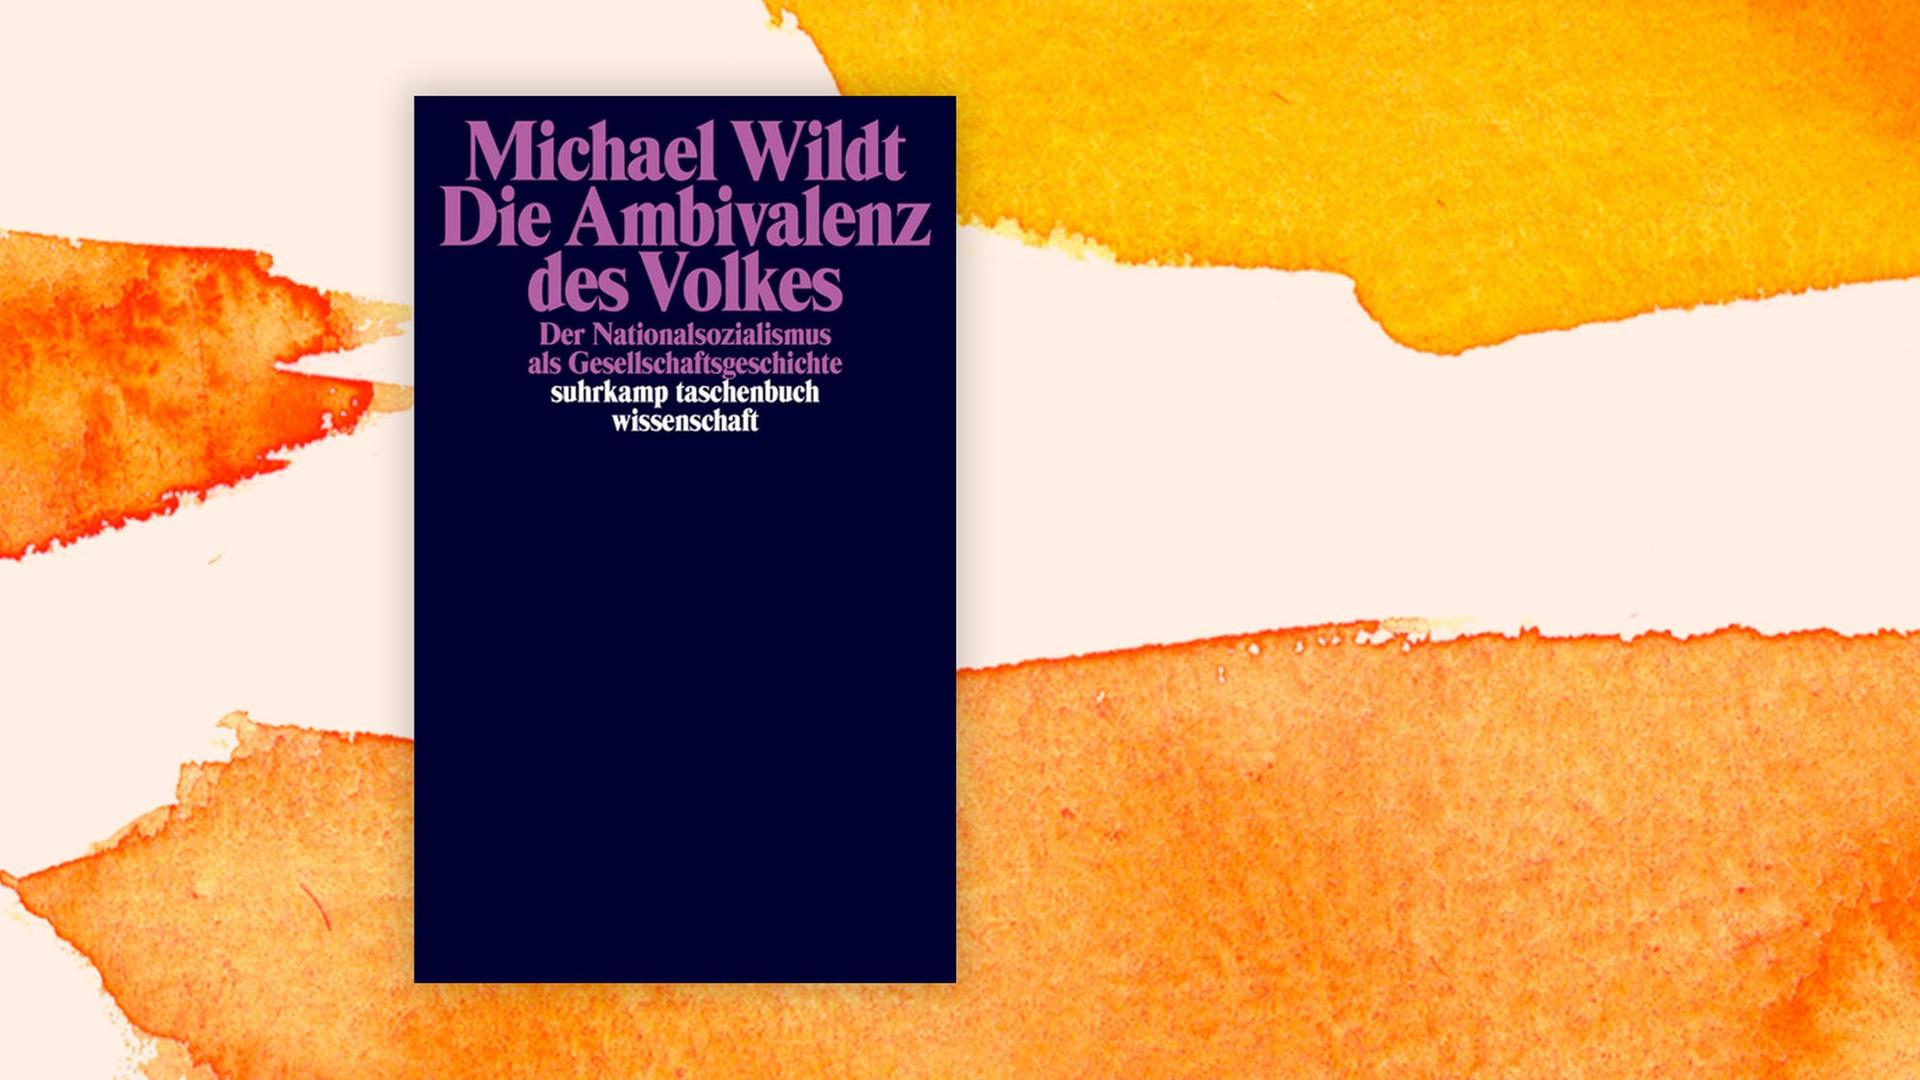 Das Cover des Buches "Die Ambivalenz des Volkes" ist vor einem aquarellierten Hintergrund zu sehen.